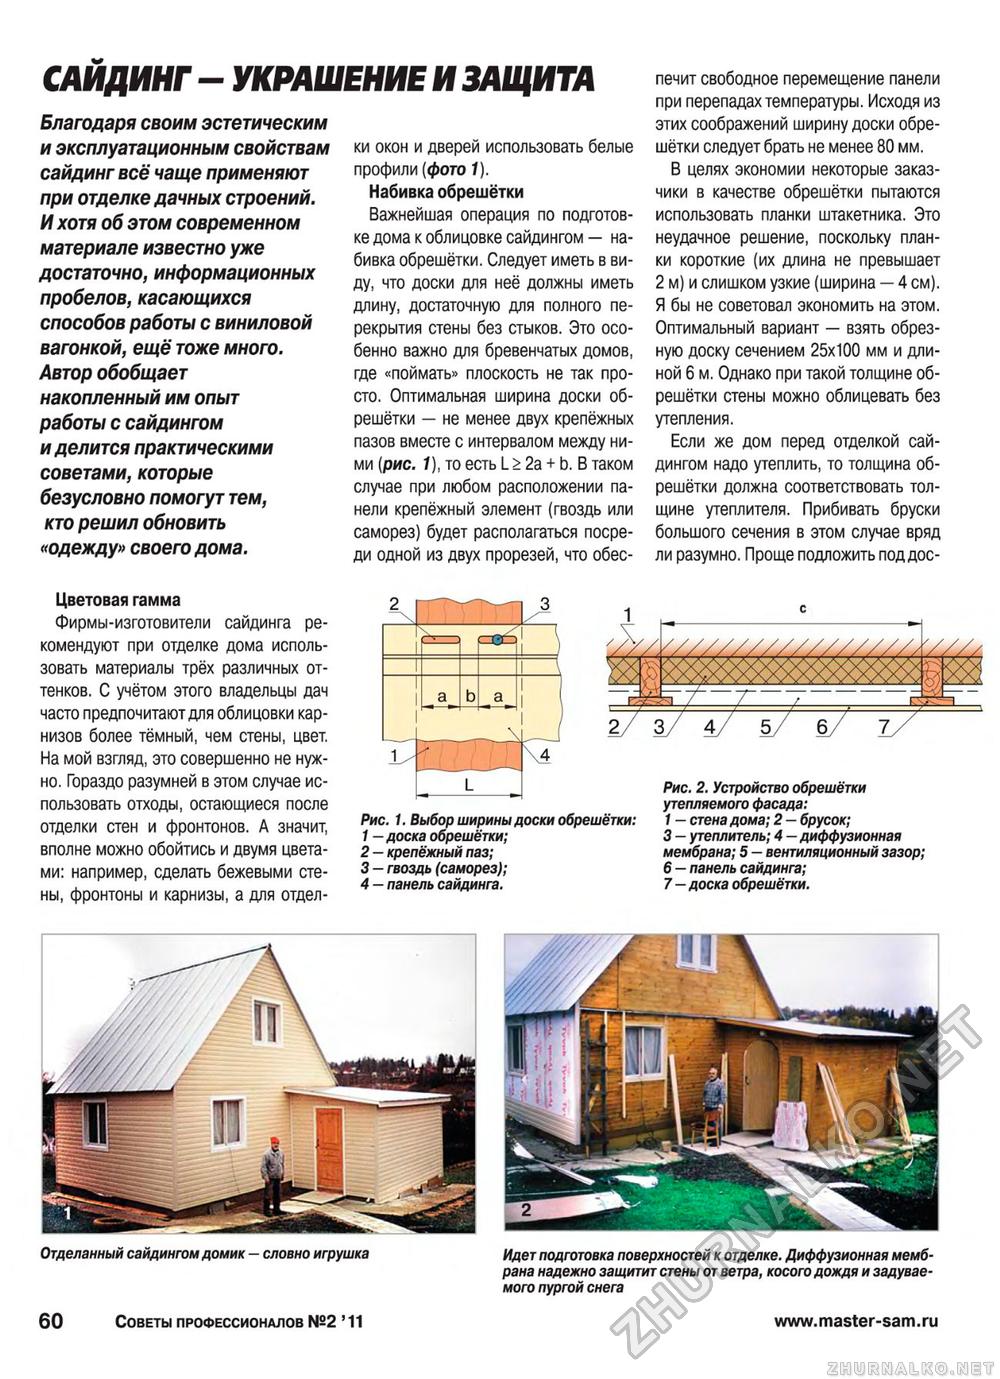 Советы профессионалов 2011-02, страница 60